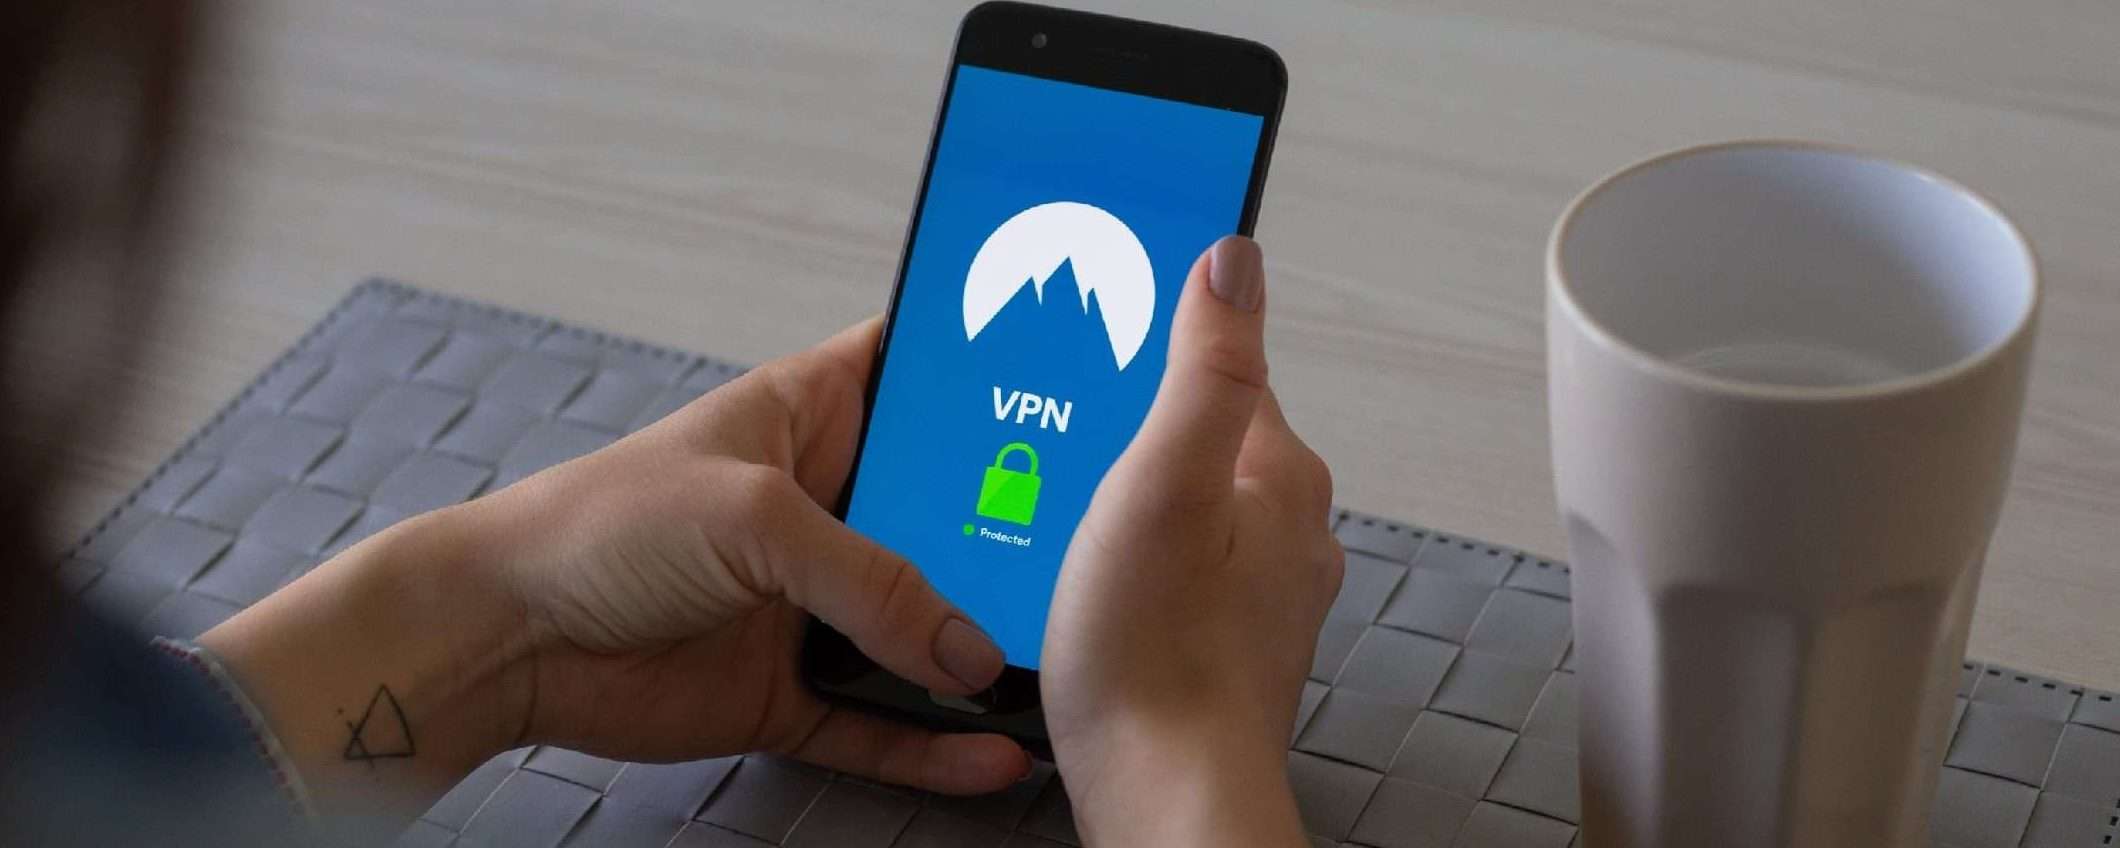 NordVPN spiega come cancellare i dati da Internet